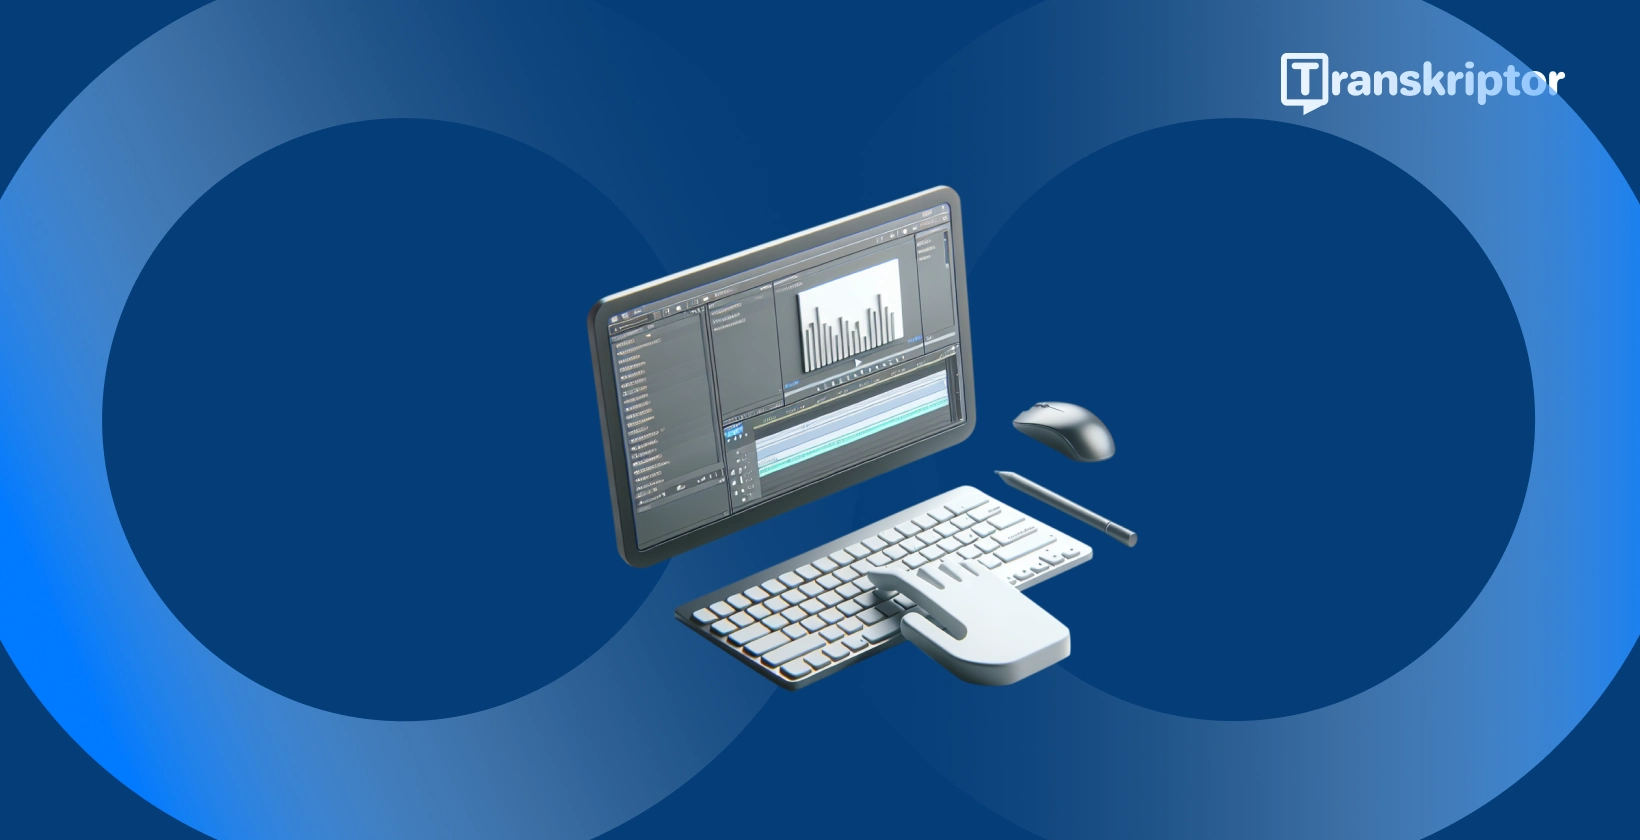 Oprogramowanie do edycji wideo Shotcut na monitorze z narzędziami do kształtu fali i tekstu, do dodawania podpisów i tytułów do filmów.